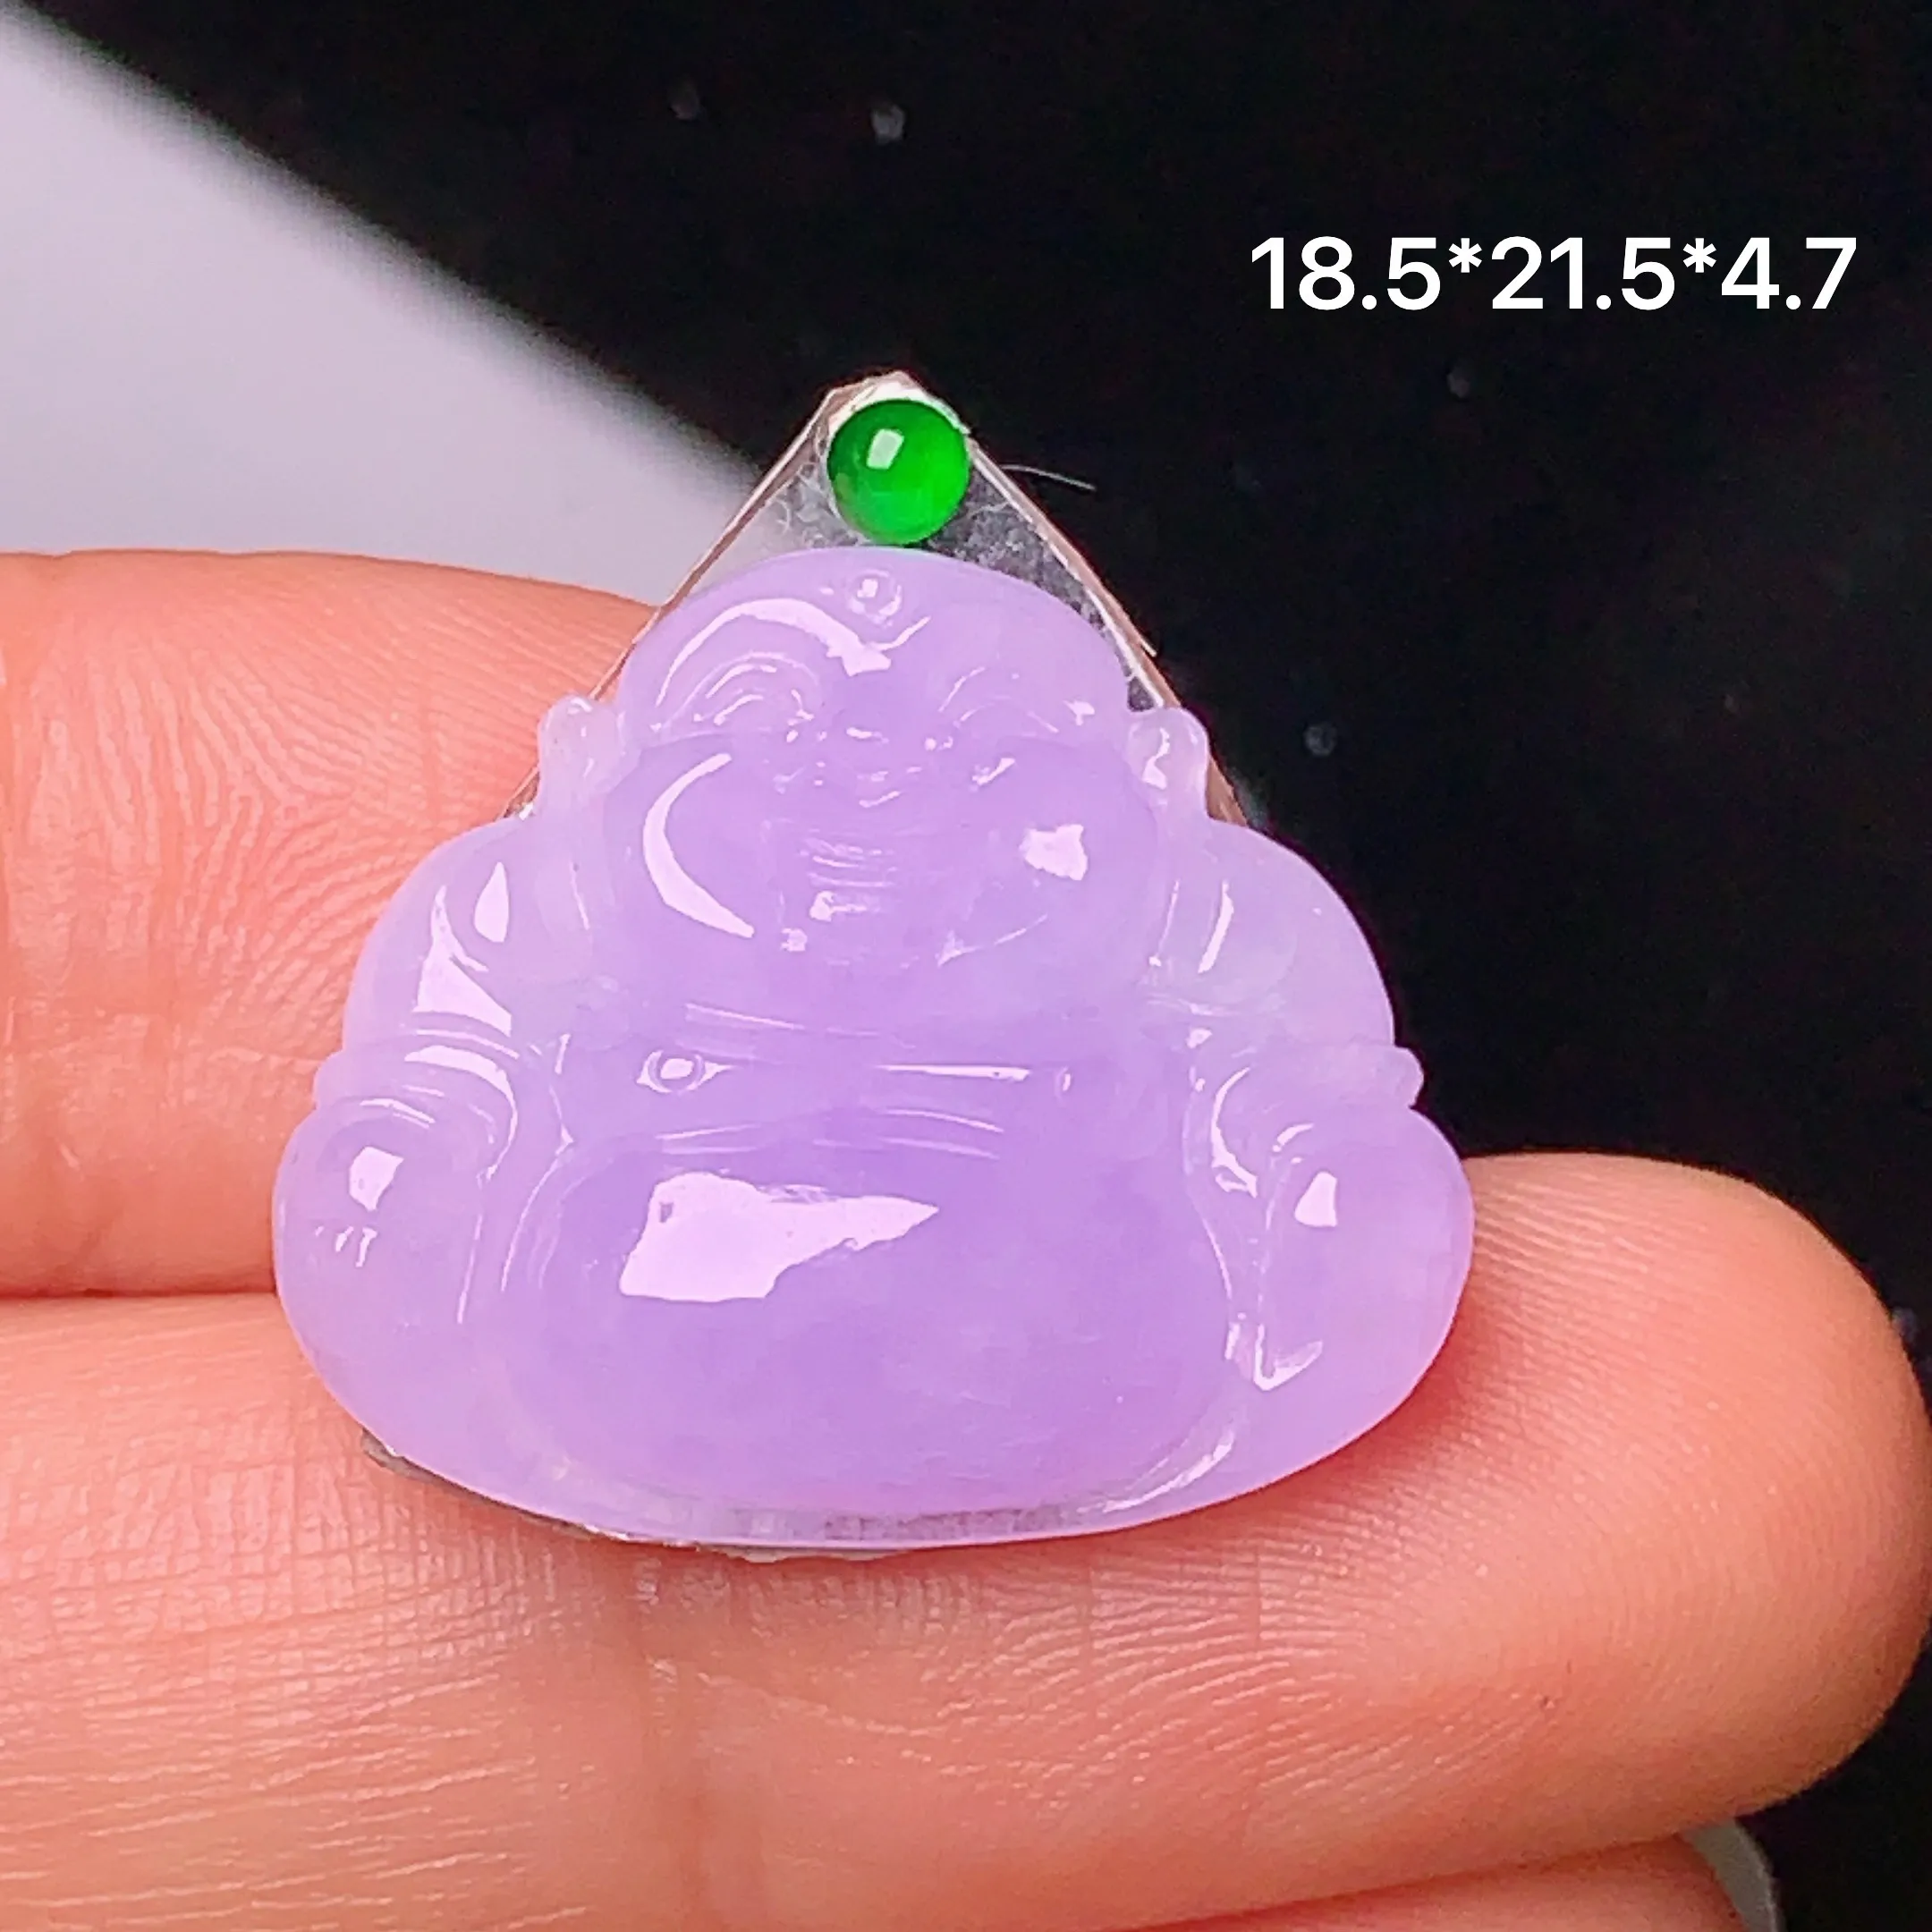 镶嵌款 紫罗兰佛公 玉质细腻 水润透亮 色泽艳丽 搭配绿色小蛋面 整体尺寸18.5*21.5*4.7